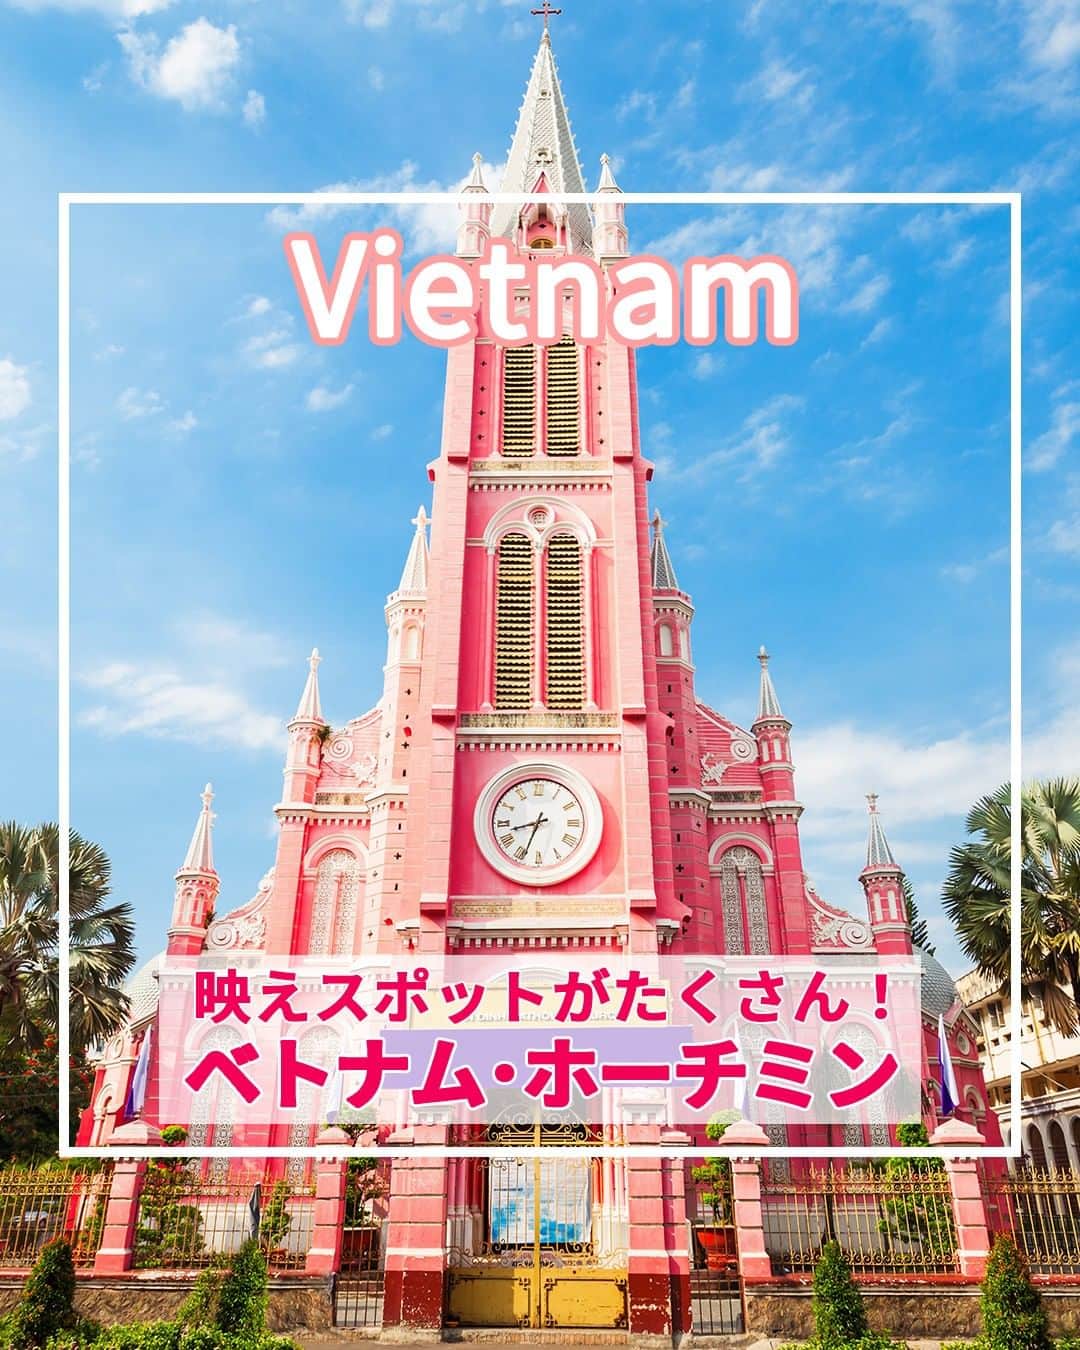 旅工房公式のインスタグラム：「＼実は女子旅にぴったり！／  #ベトナム #ホーチミン    こんにちは！☺  今回はベトナムの中でも、コロニアル建築がかわいいホーチミンを特集しました！  かわいい有名観光スポットから人気グルメまでまとめてあります♪     旅行先の参考にぜひしてみてください＼(^o^)／ 💚    ━━━━━━━━━━━━━━━    ▽お写真ありがとうございます❣   📍サイゴン大教会  赤レンガ造りのホーチミンを代表する大教会です。  撮影スポットとして観光客から大人気！  庭園には花が咲き乱れ、住民や観光客の憩いの場所にもなっています。   📍タンディン教会  SNSで人気の「ピンクの教会」として有名なスポット！ピンク色に塗られた外観がかわいすぎると話題になりました。  撮影したら思わずSNSにアップしたくなること間違いなしです！   📍サイゴン中央郵便局  ヨーロピアンな雰囲気の外観と内装が特徴的な建物な郵便局！  実は現役の郵便局で、観光客にも一般公開されています！  ここから自分のお家にエアメールを送るのもおすすめです♪   📍ホーチミン人民委員会庁舎  豪華なコロニアル建築が目を引く美しい建物！  現在も官舎として使用されているため内部見学はできませんが、美しい外観がSNSで人気！  夜はライトアップされ、また違った雰囲気が楽しめます♪   📍Bánh Mì Huynh Hoa（バインミーフィンホア） @miyuki_kurihara さん  バインミーの有名店「バインミーフィンホア」！  バインミーとはベトナム風バゲットサンドのこと。  ぎっしり詰まった具材が人気の秘訣。  とても人気でお昼時には行列ができることもあるんだとか！   📍Trung Nguyên Legend  独自のフィルターを使った濃厚なコーヒーとコンデンスミルク（練乳）が特徴的なベトナムコーヒーが楽しめます！  おしゃれな店内やテラス席が人気のお店で、お土産も購入可能です♪   この記事を読んで、ぜひ次回の海外旅行の参考にしてみて下さい＼(^o^)／💛       #旅工房 #ベトナム女子旅 #ベトナム旅行 #ホーチミン旅行 #ホーチミン人民委員会庁舎#サイゴン中央郵便局 #サイゴン大教会 #タンディン教会 #BánhMìHuynhHoa #ベトナムグルメ #ベトナムカフェ #ホーチミングルメ #フィンホア #バインミー #ベトナムコーヒー #ベトナム料理 #TrungNguyênLegend #チェングエンレジェント #海外旅行 #旅行好きな人と繋がりたい #海外旅行準備 #旅好き女子 #海外旅行行きたい #海外旅行計画 #旅スタグラム #海外一人旅 #旅の記録」